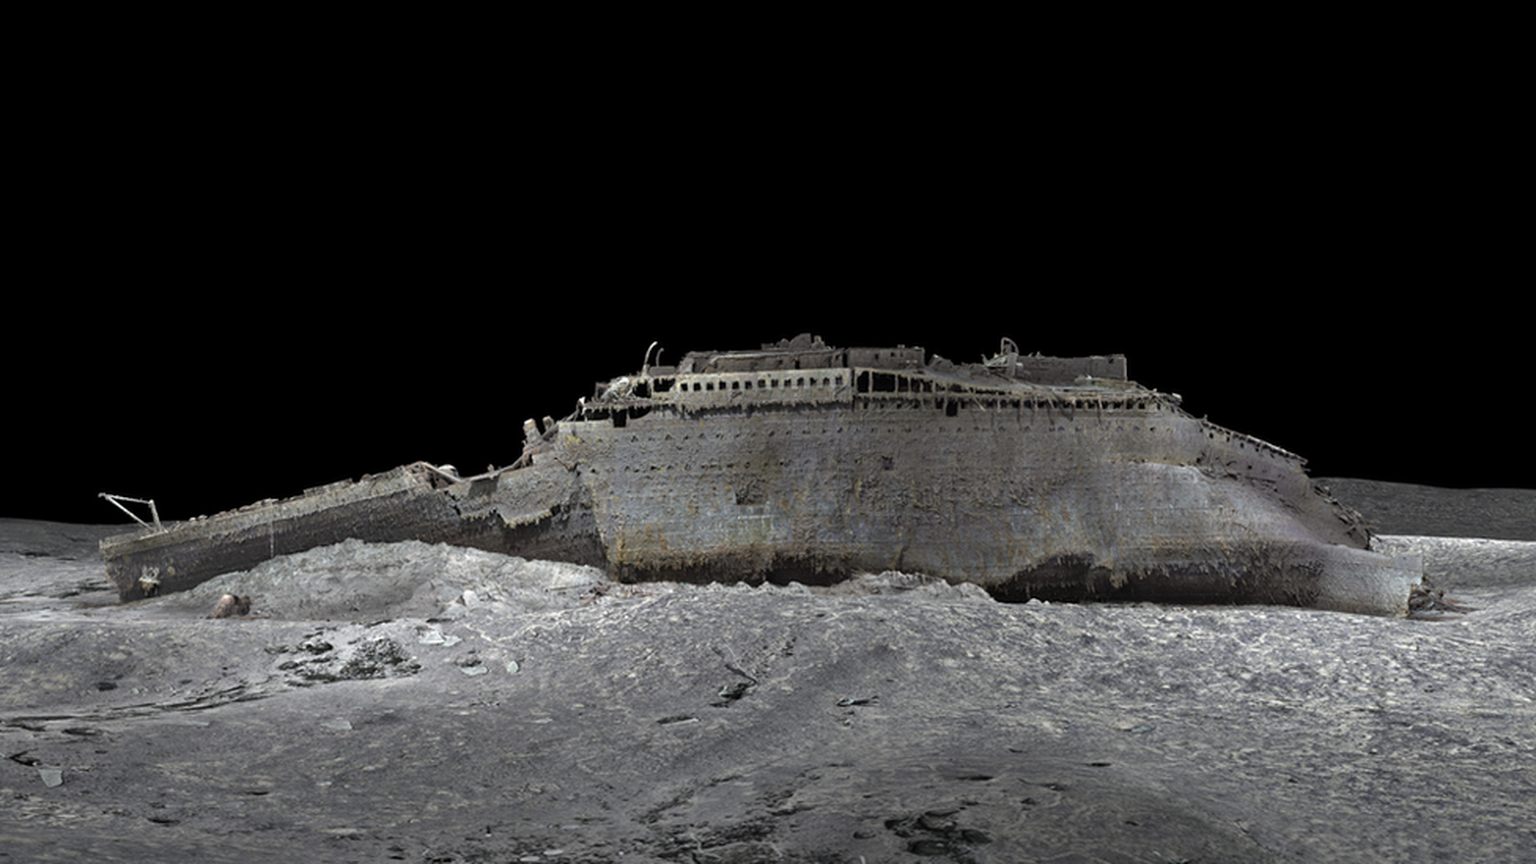 Ученые надеются, что сканирование позволит узнать больше о том, что именно произошло в ночь гибели «Титаника».